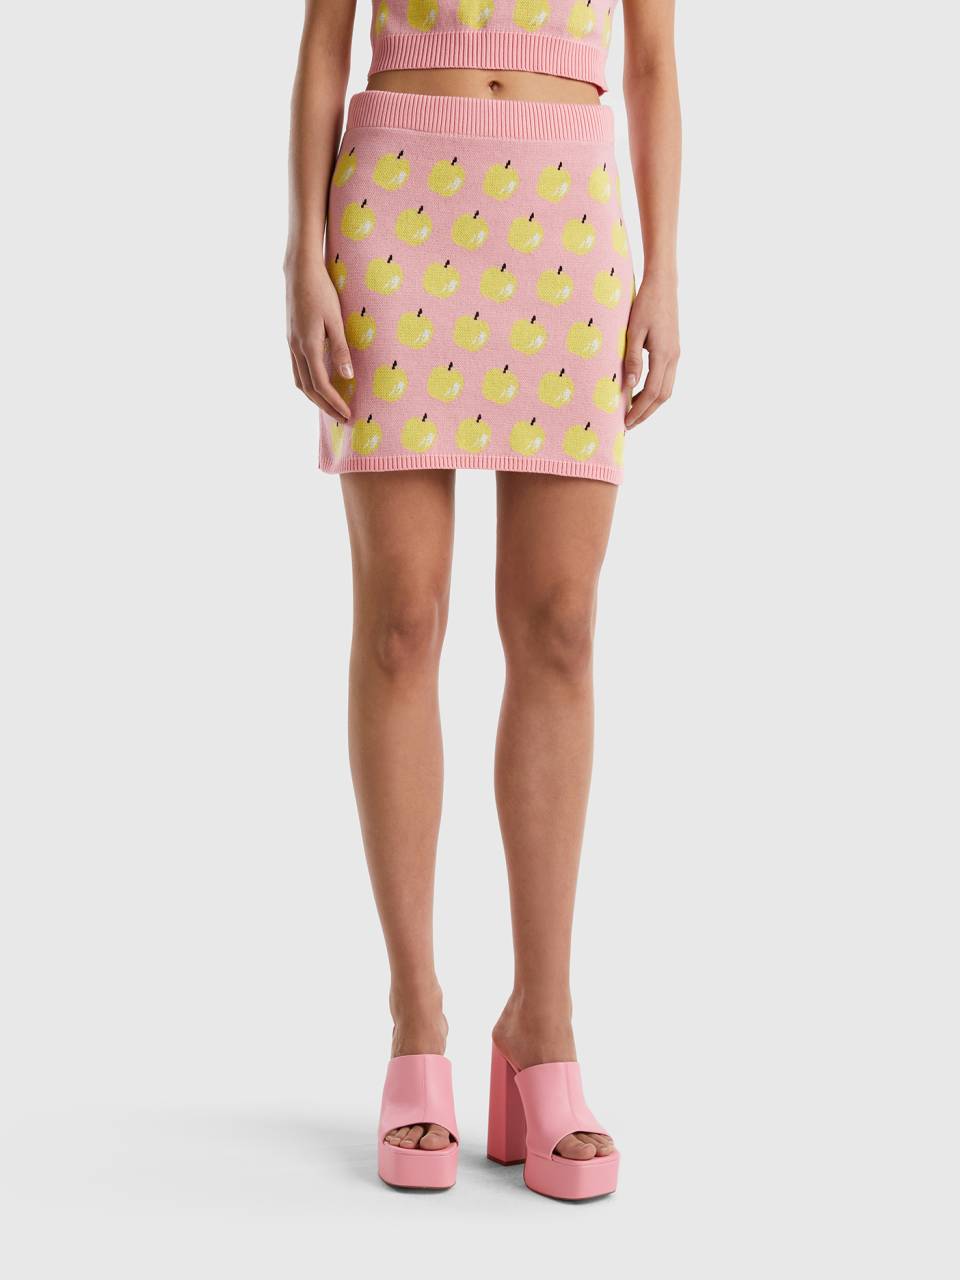 Benetton pink mini skirt with apple pattern. 1